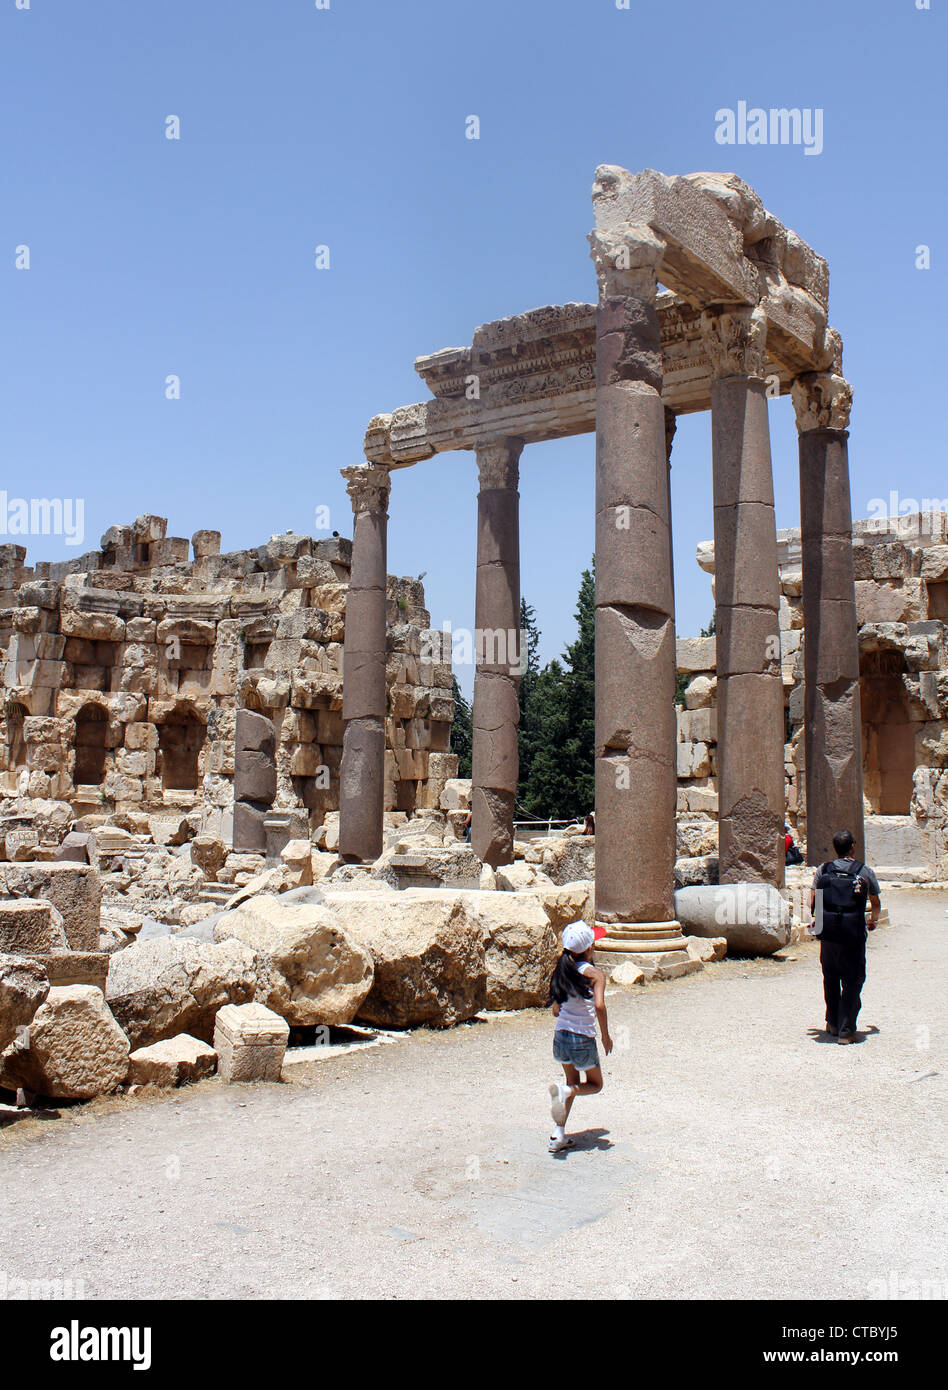 Las ruinas romanas de Baalbek, Líbano Foto de stock